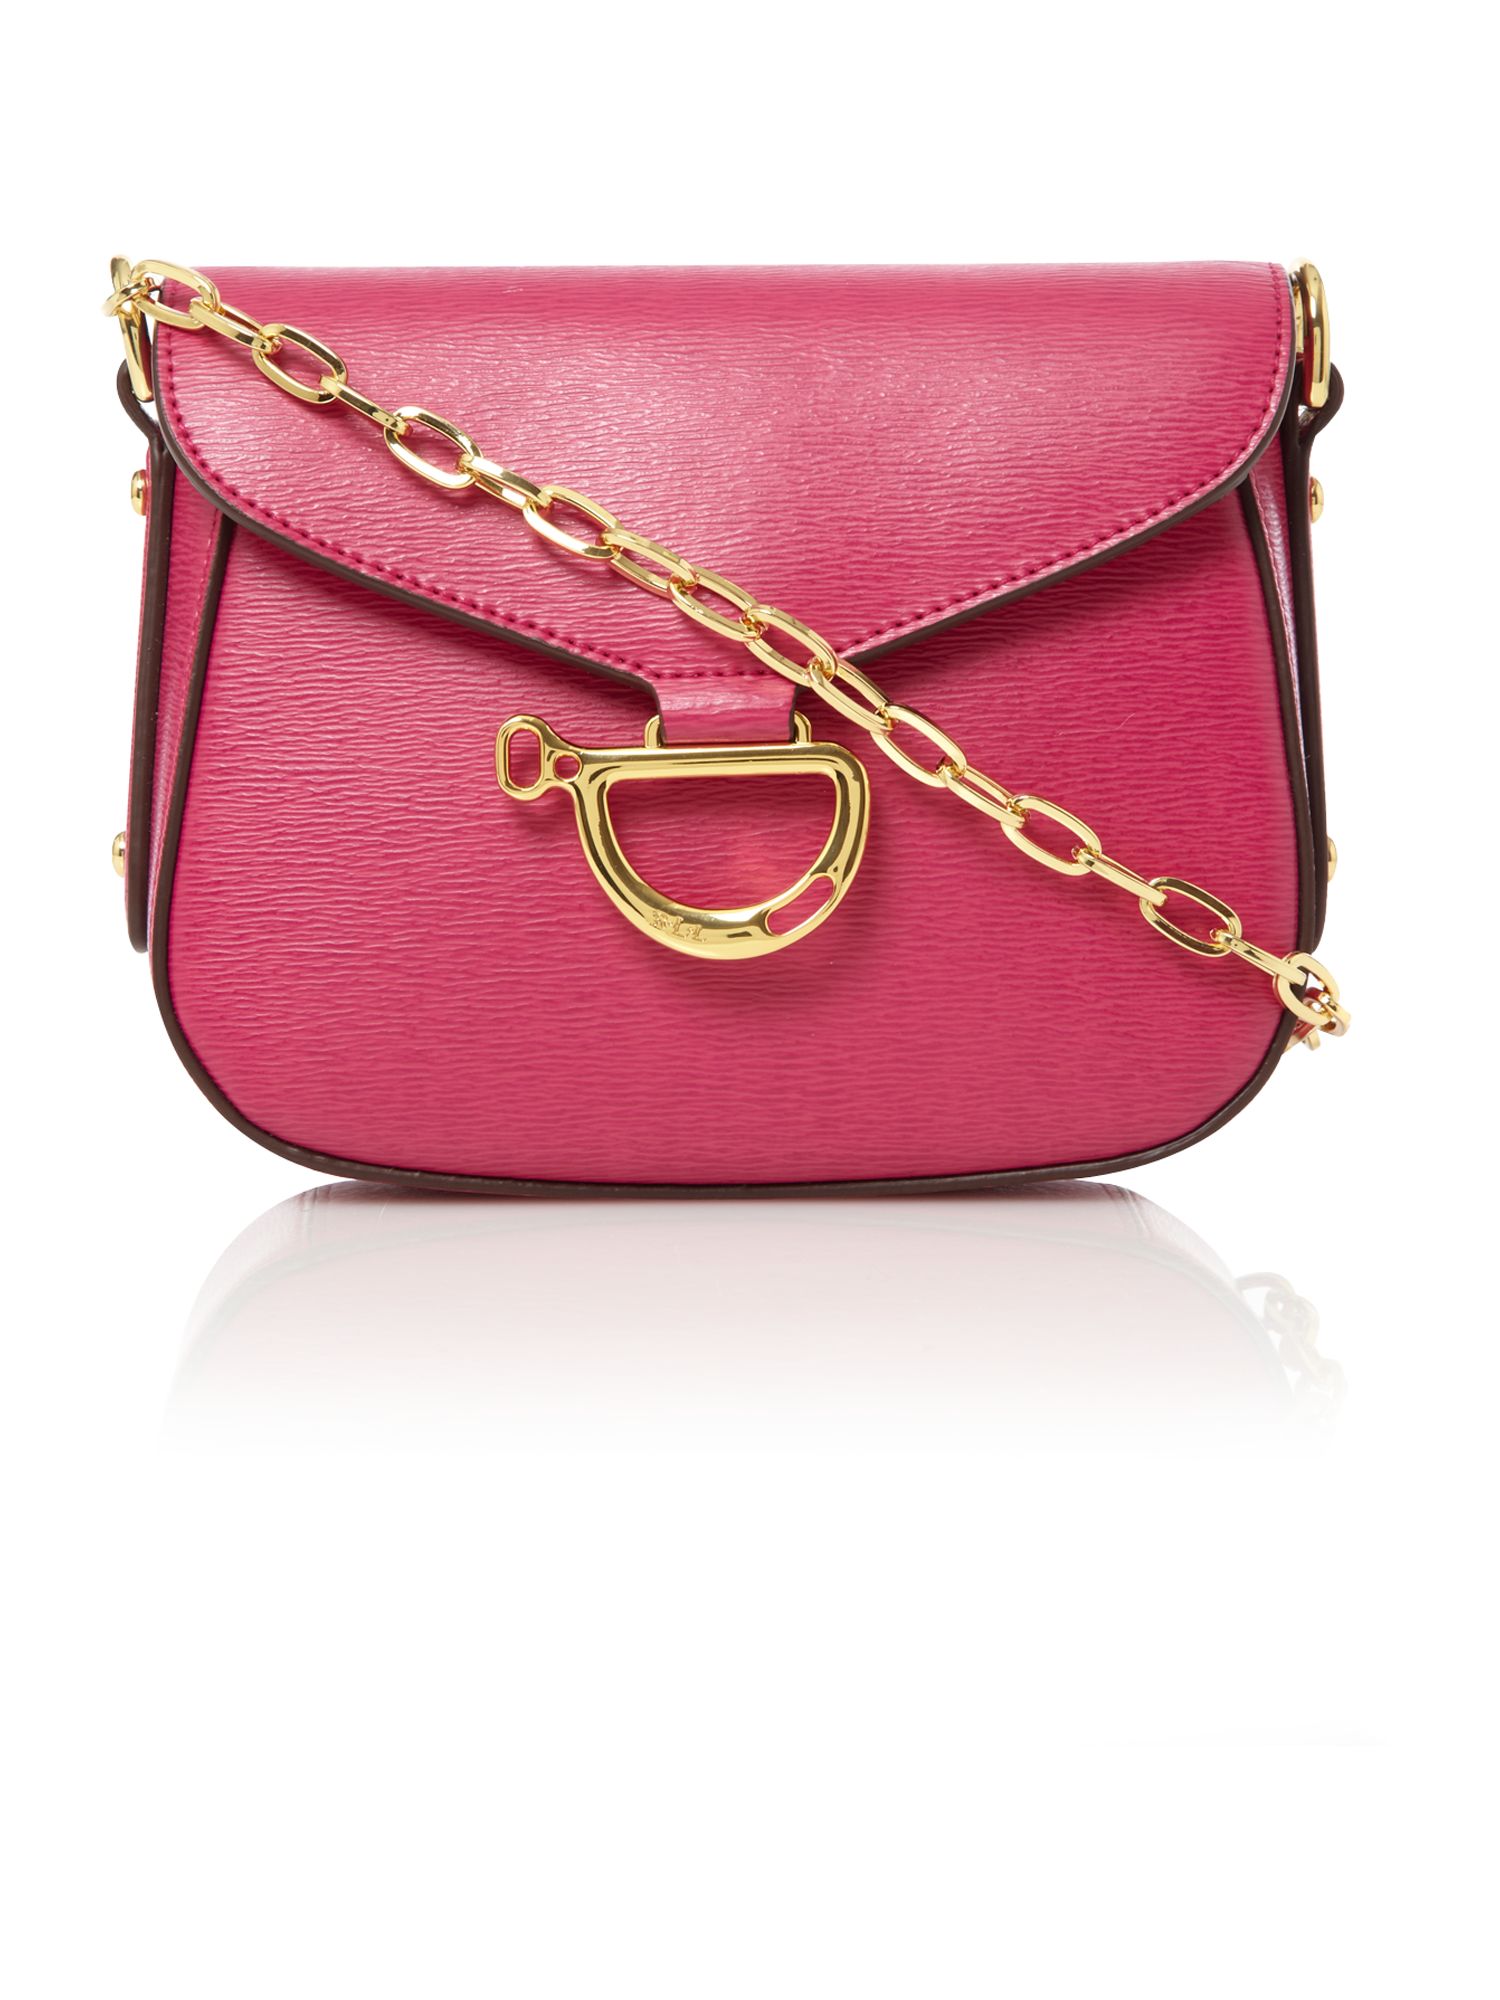 Lauren By Ralph Lauren Newbury Chain Shoulder Bag in Pink | Lyst